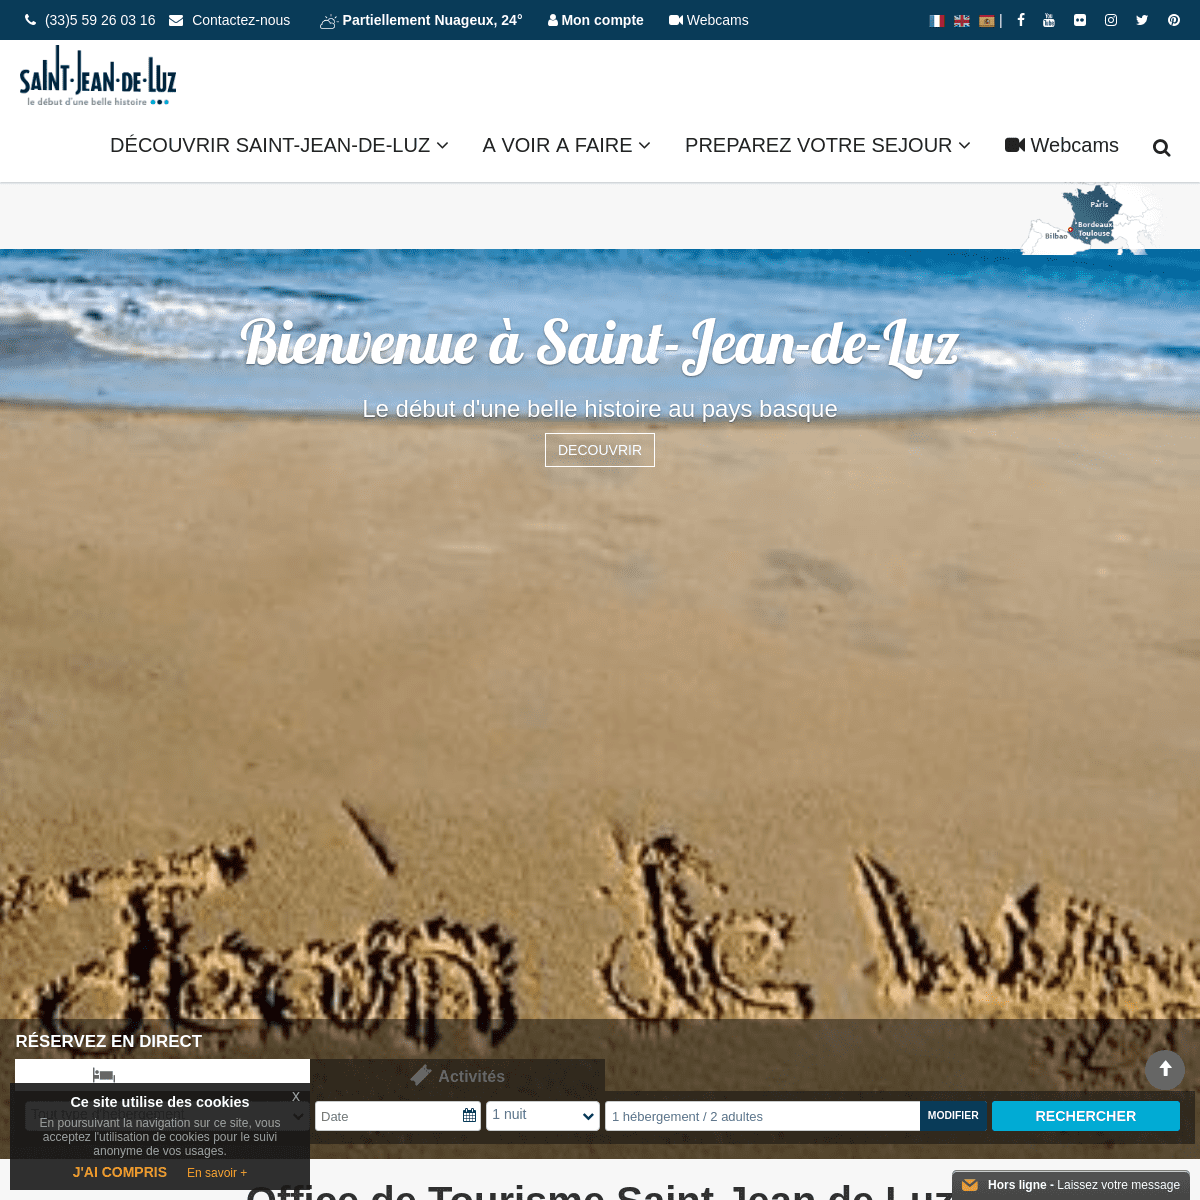 Bienvenue sur le site officiel de Saint-Jean-de-Luz